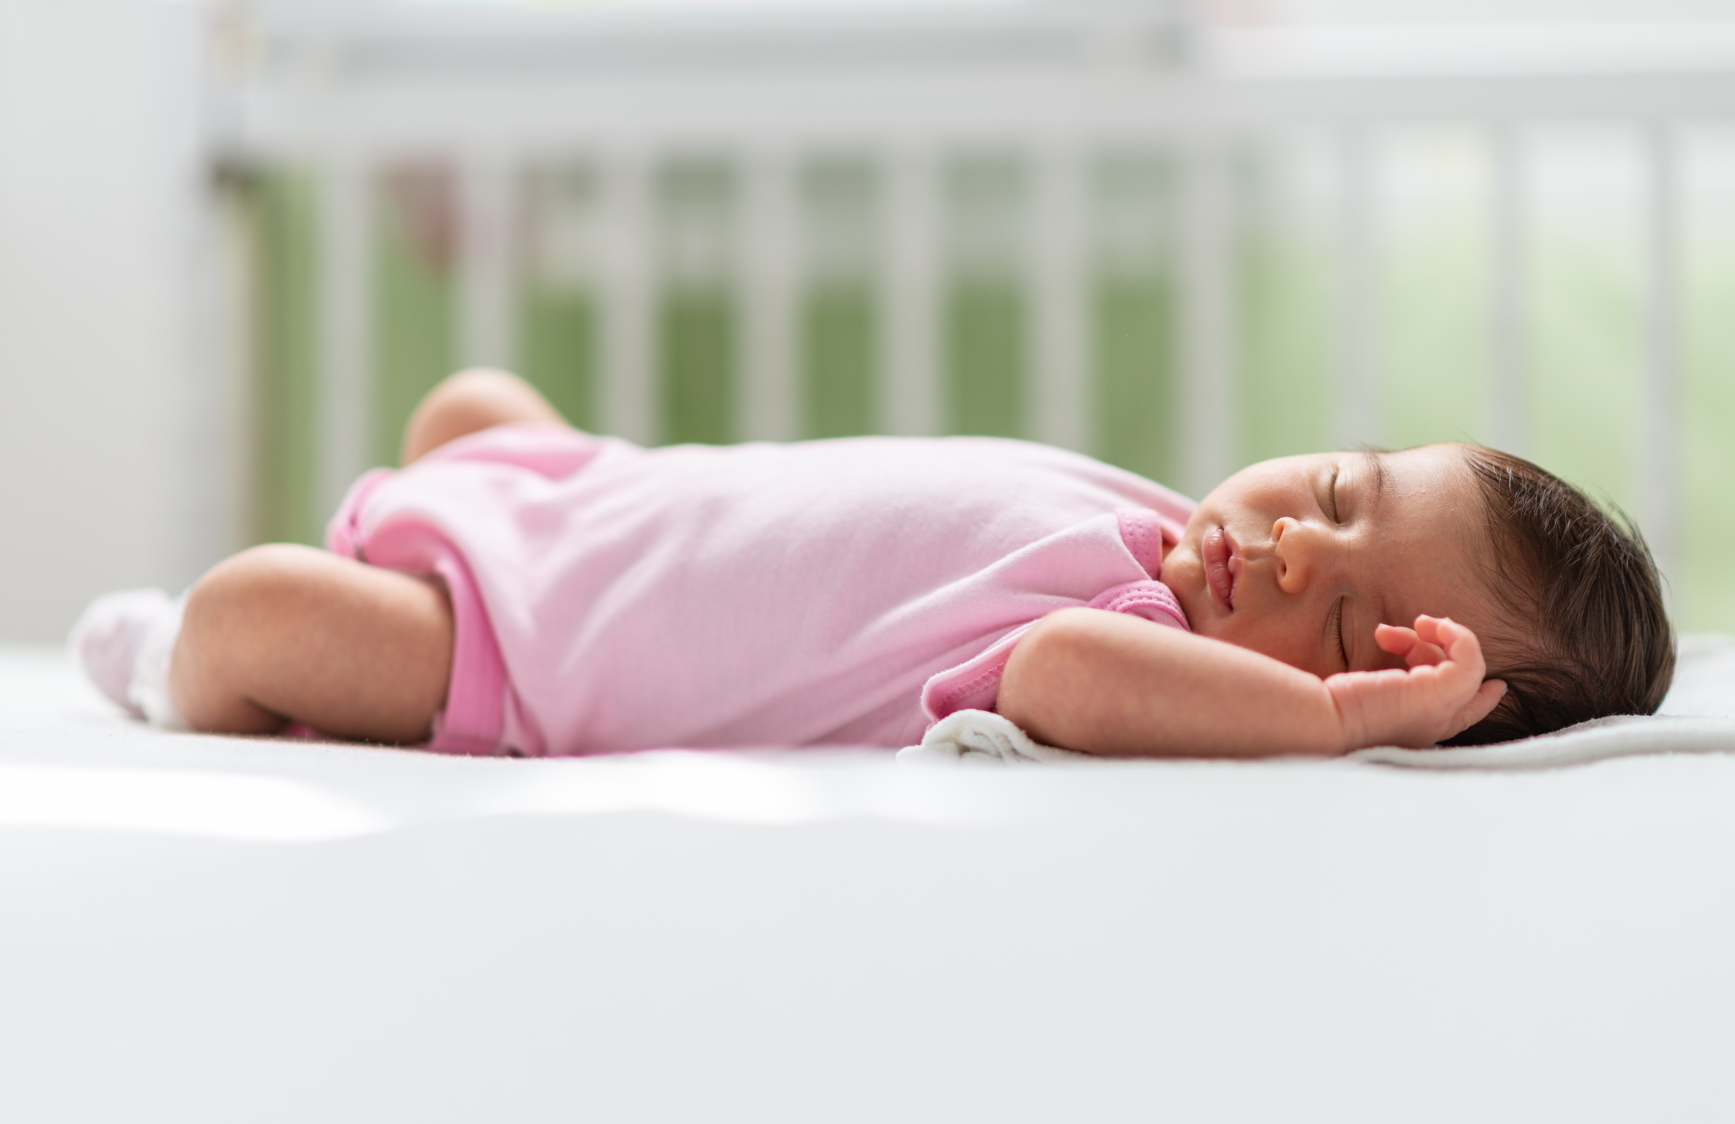 Un bébé dort sur le dos dans un lit d’enfant. Il n’y a rien d’autre dans le lit avec le nourrisson qui dort paisiblement.